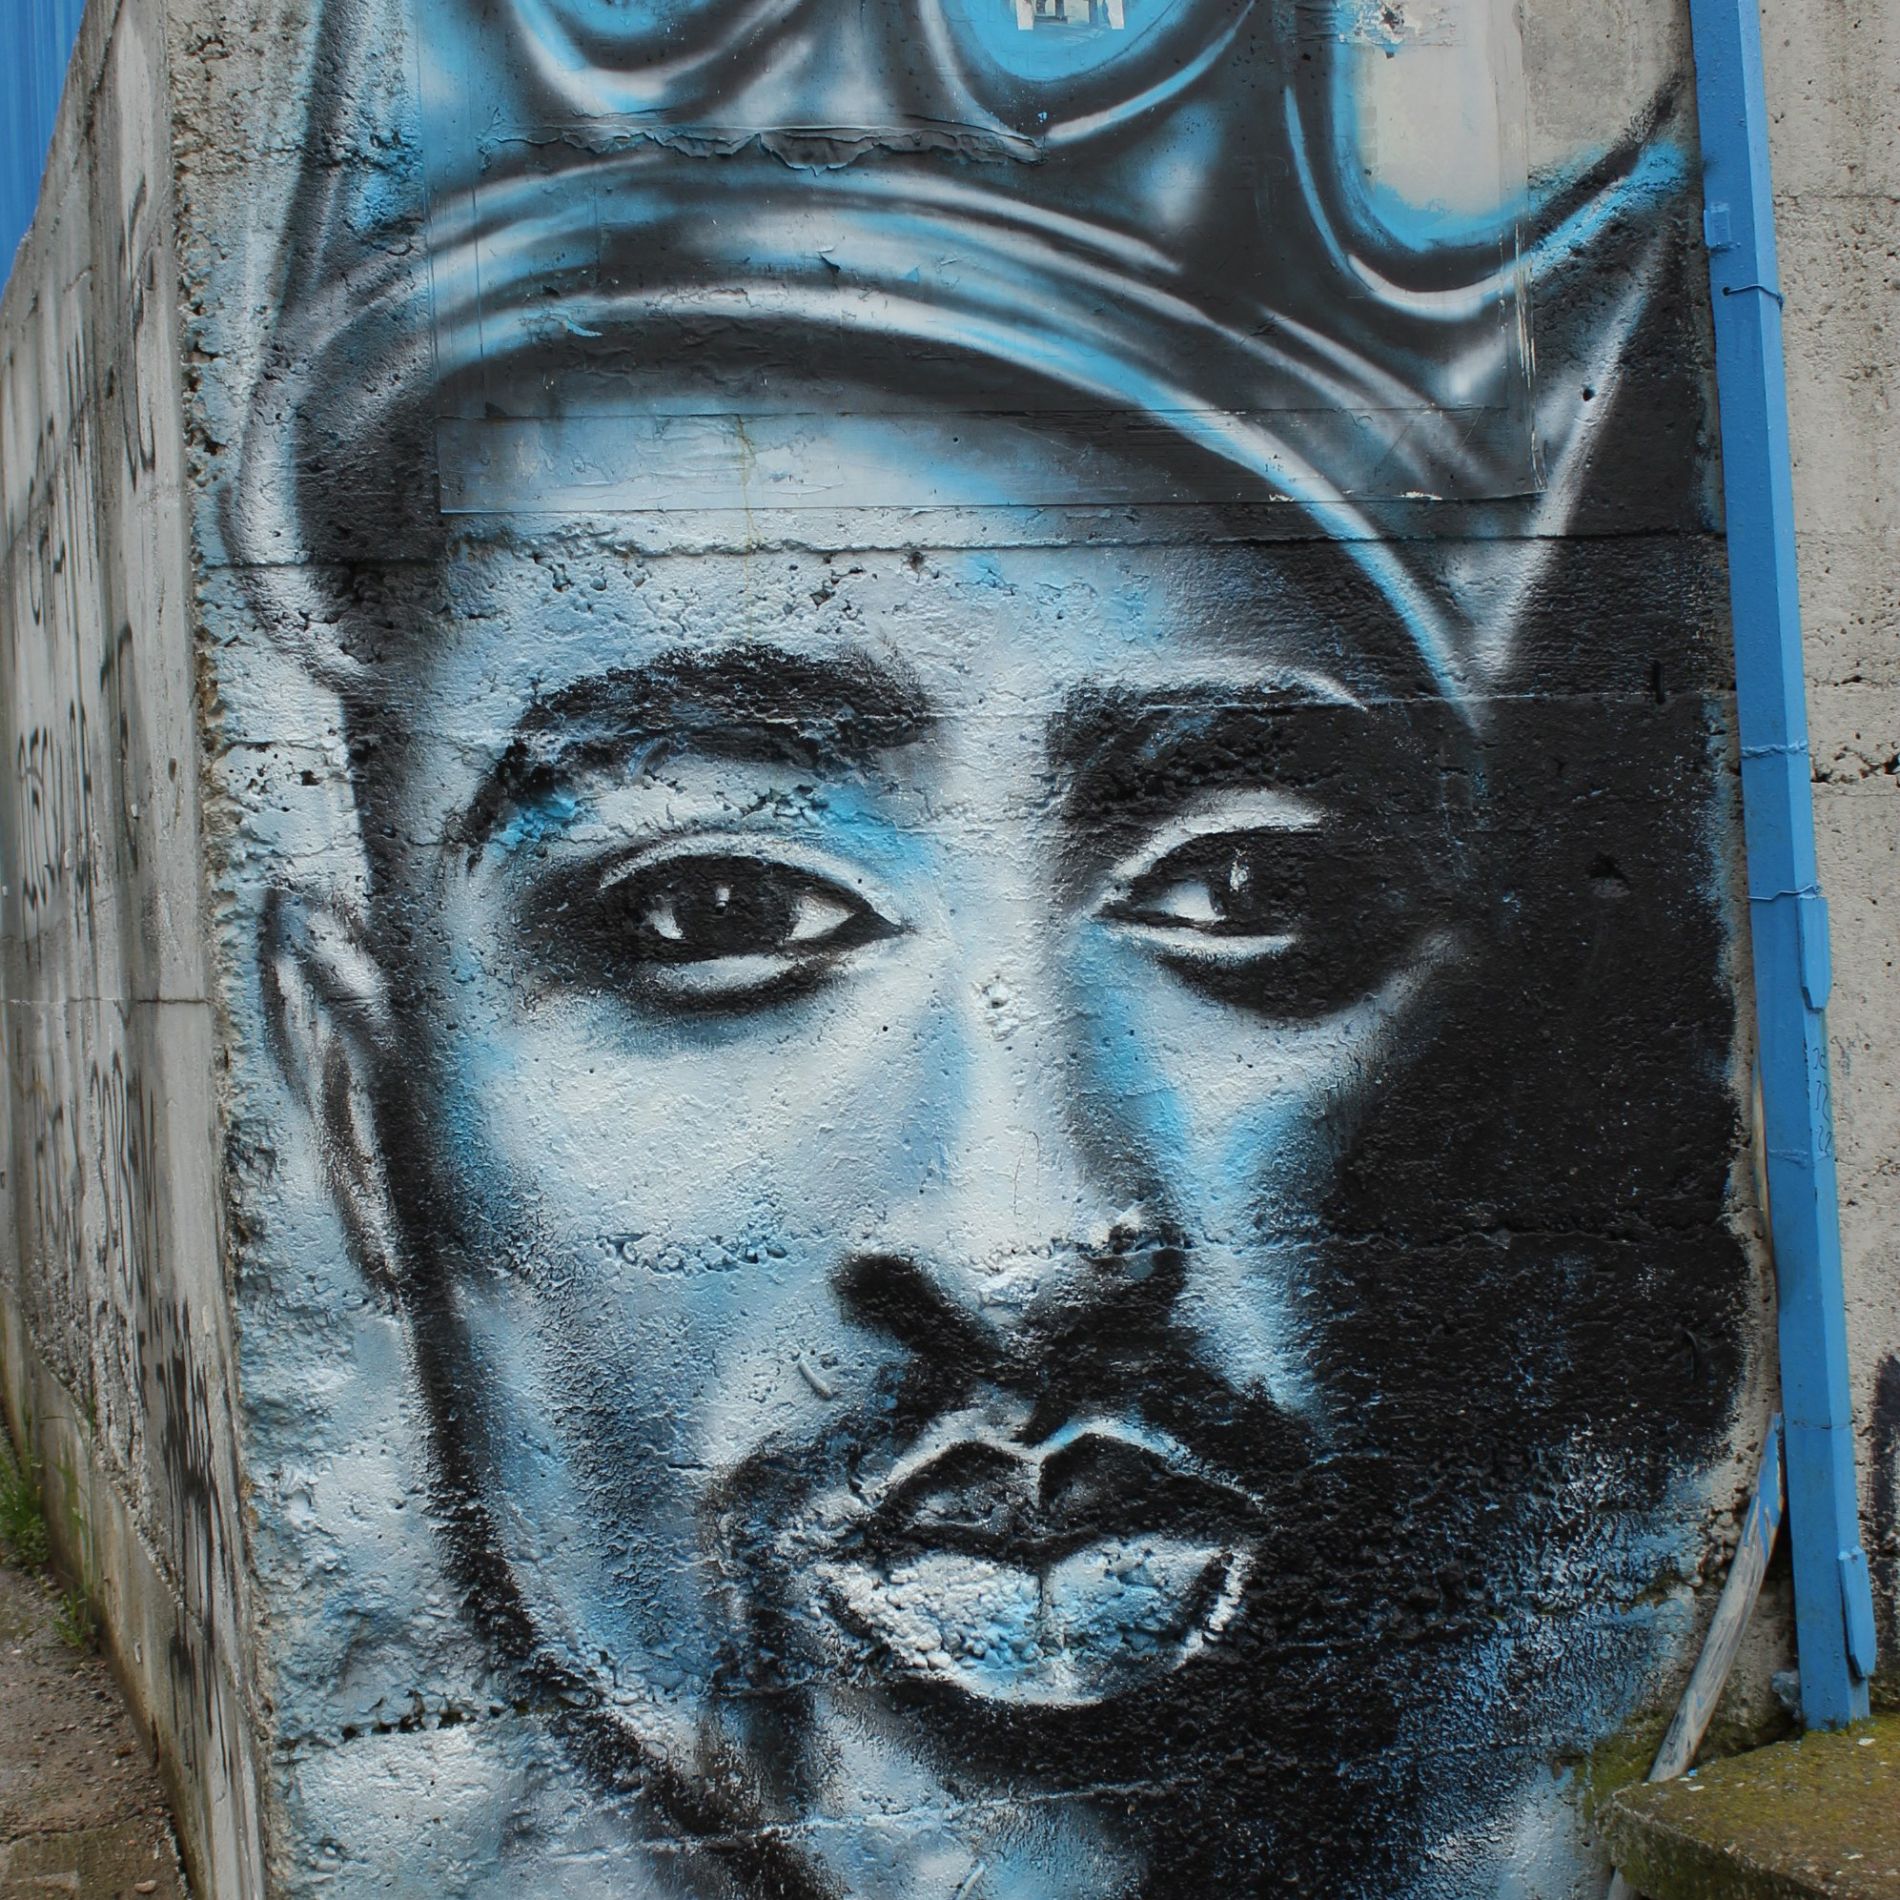 Tupac grafitti, Vlasotince, Serbia by Чигот via Wikimedia Commons